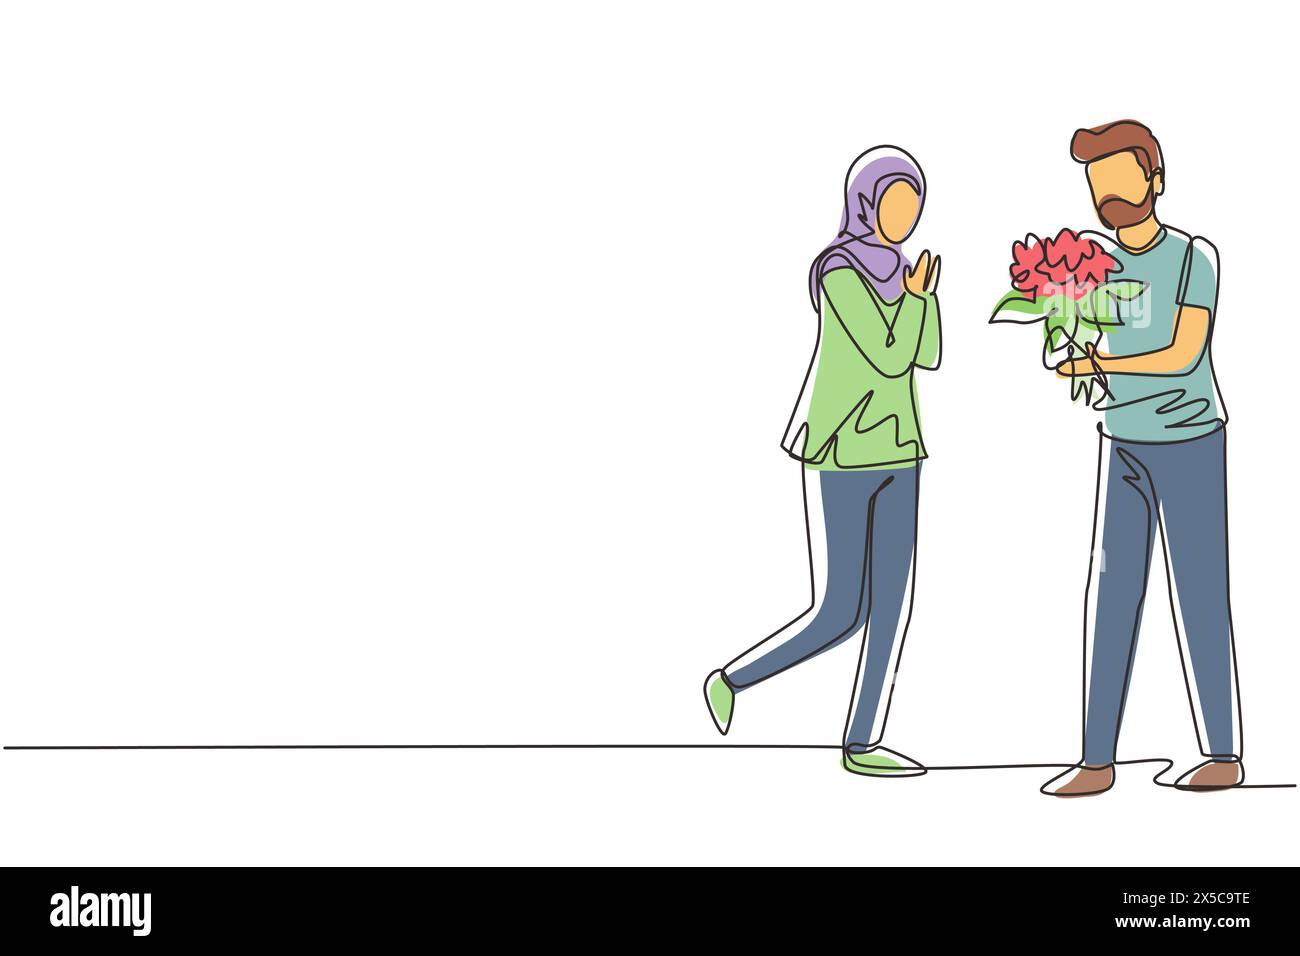 Durchgehend eine Linie zeichnet ein arabischer Mann, der eine Ehe mit einer Frau mit Blumenstrauß anbietet. Der Junge überrascht sein Mädchen und gibt Blumen. Engagement und Liebe Stock Vektor